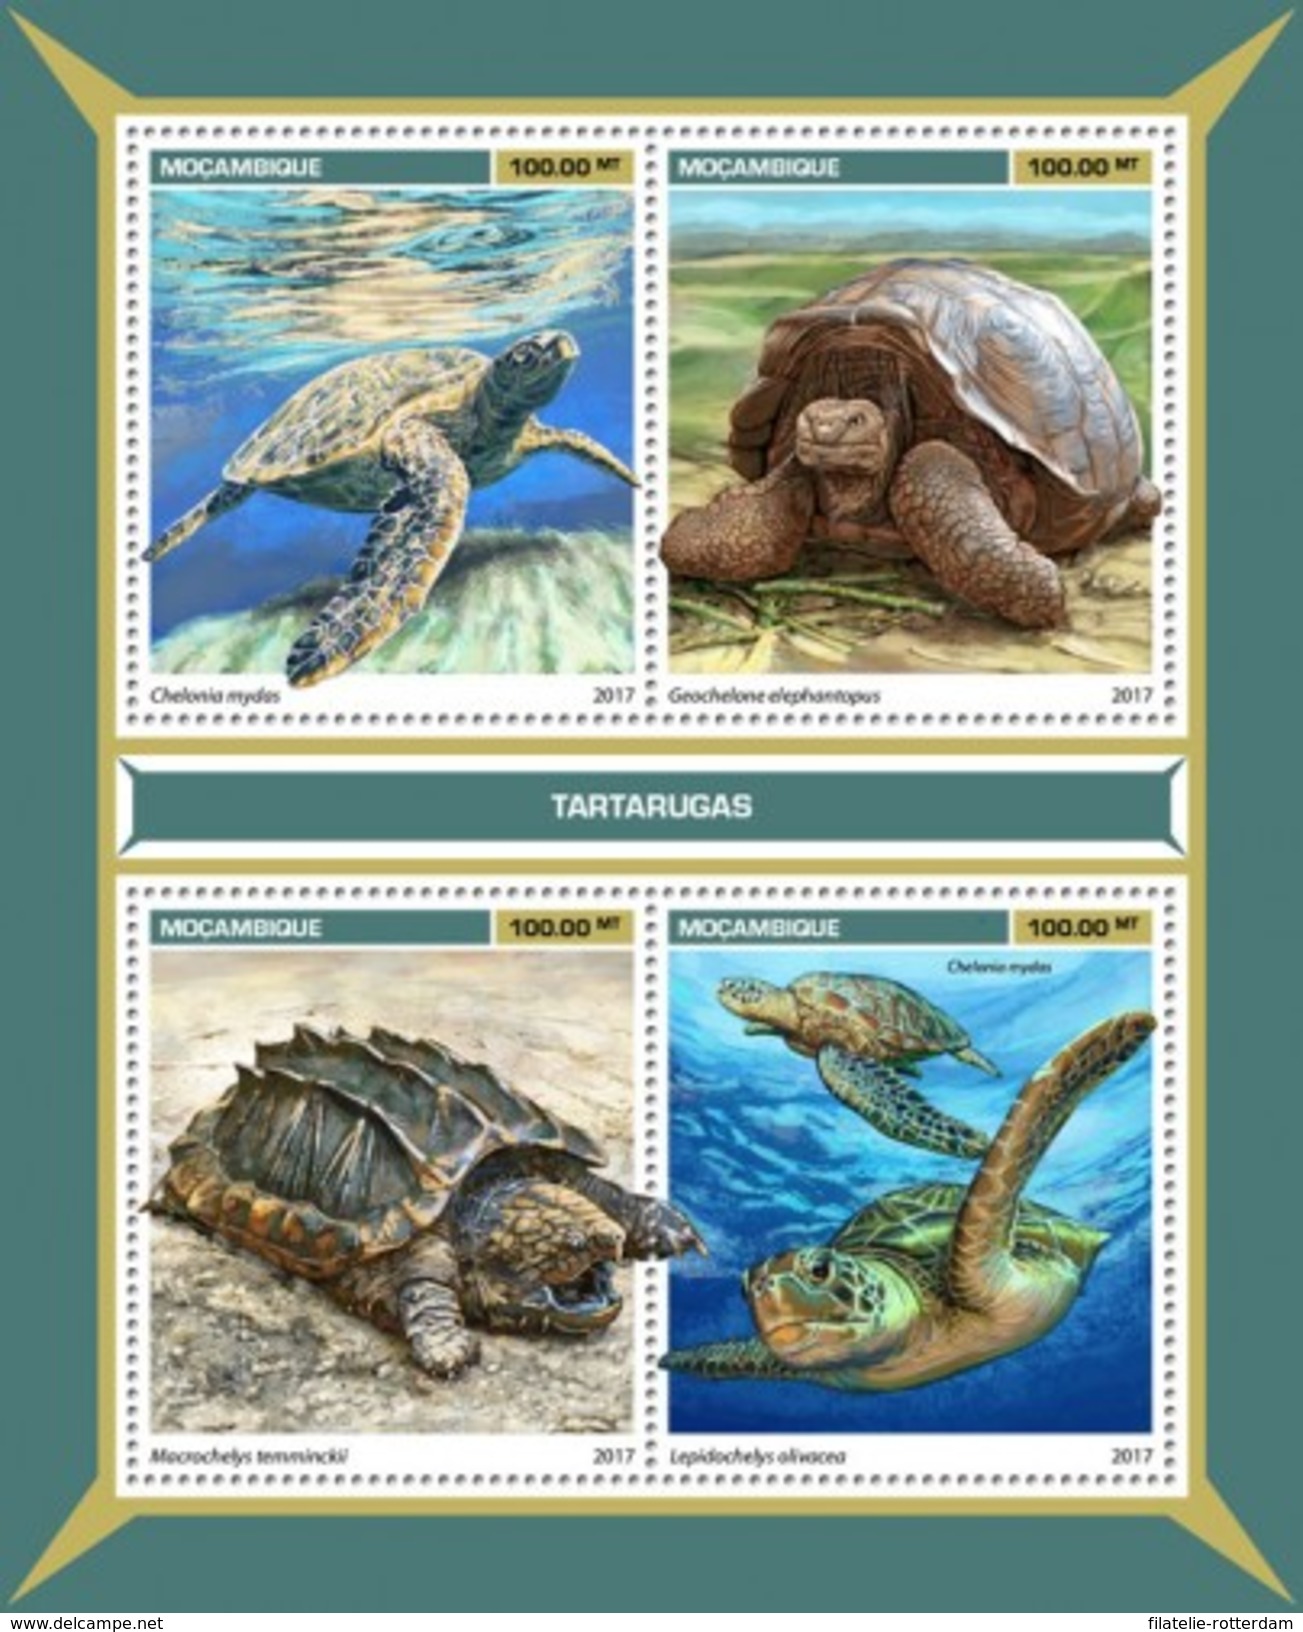 Mozambique - Postfris / MNH - Sheet Schildpadden 2017 - Mozambique